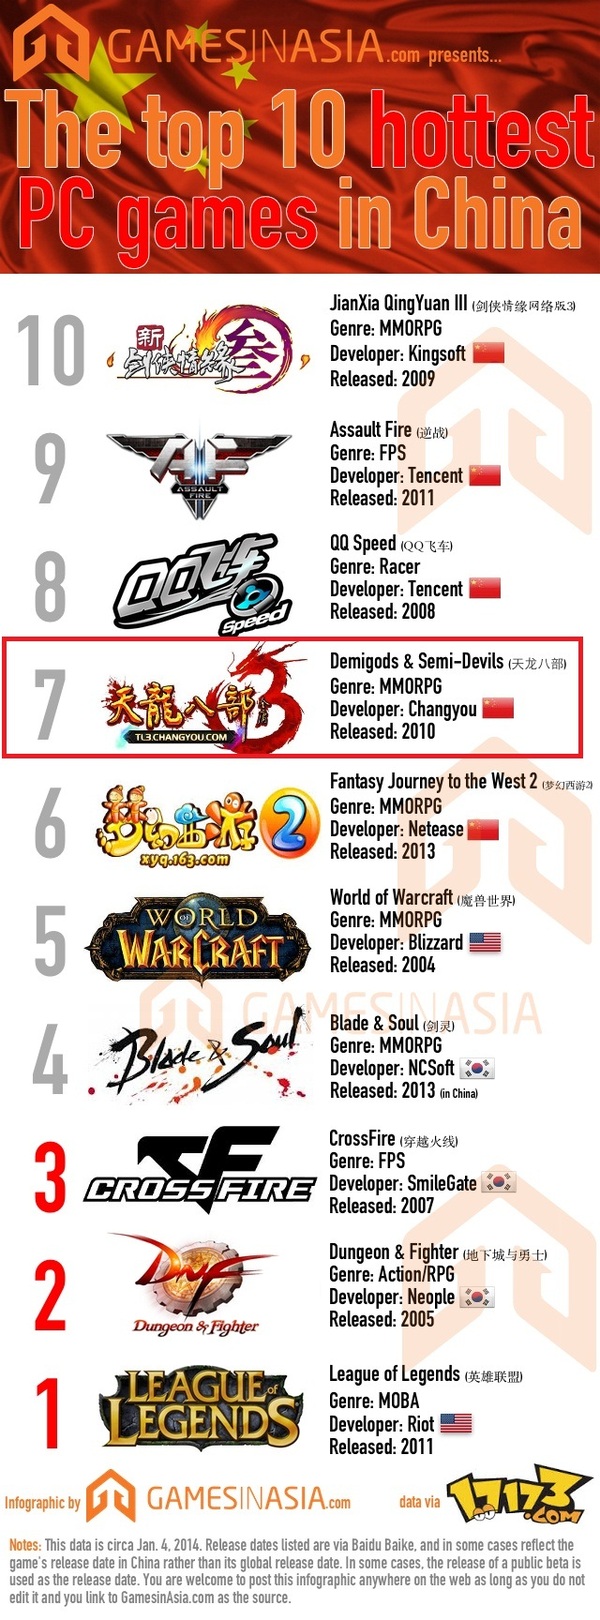 Thiên Long Bát Bộ 3 khẳng định vị thế trên thị trường game quốc tế 1